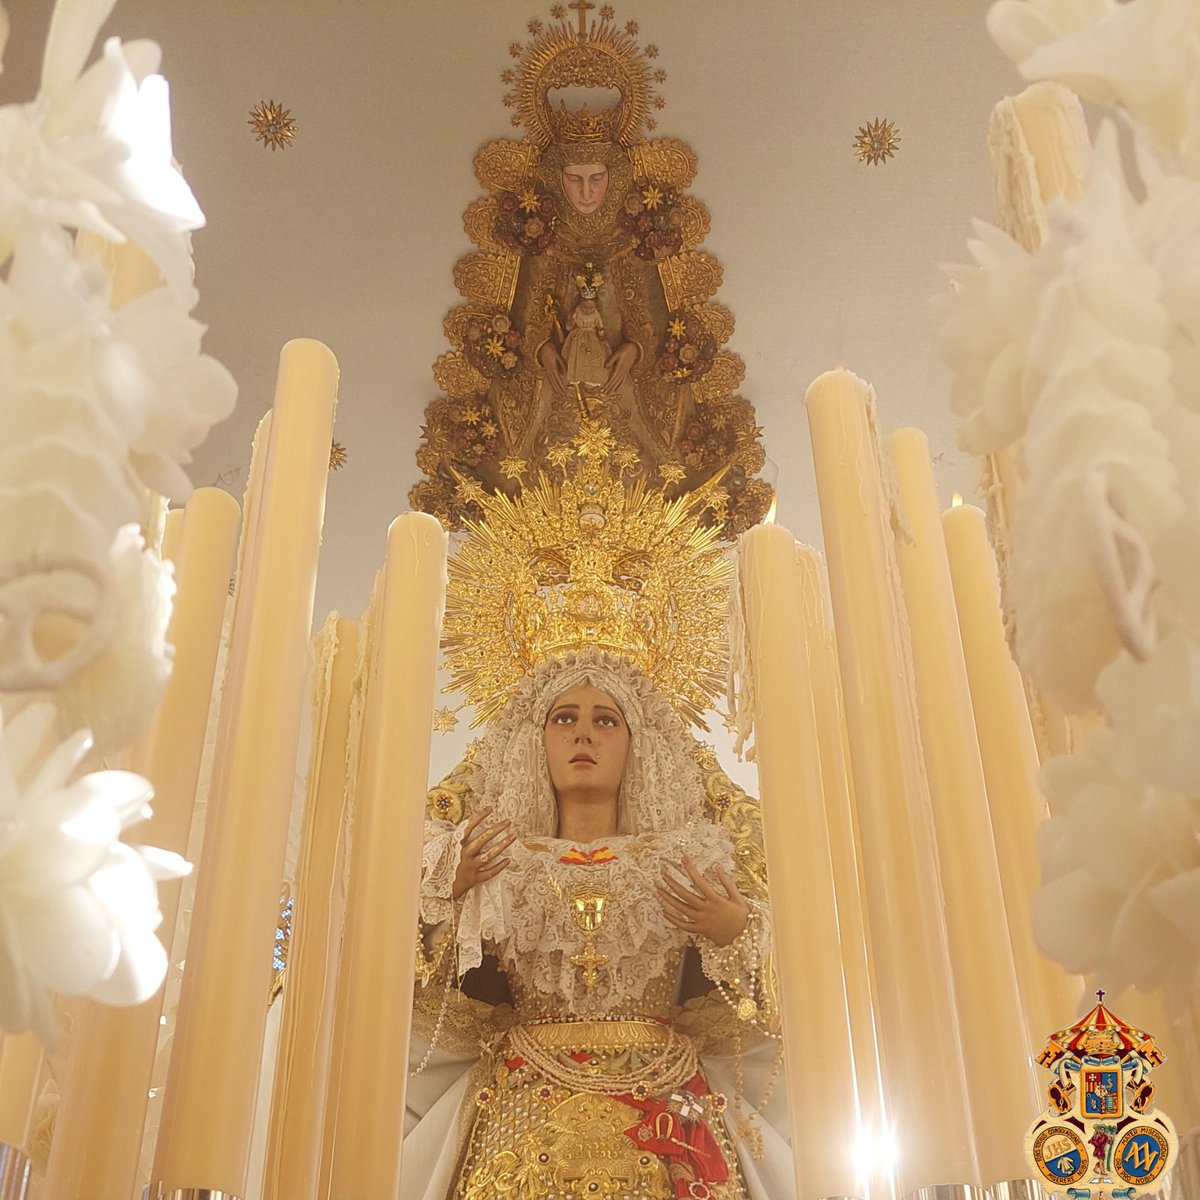 Nuestros mejores deseos a la Real Hermandad de Nuestra Señora del Rocio de Jerez de la Frontera que en el día de hoy comienza su peregrinar hacia la aldea del Rocío.

#yosoydeltransporte 
#megustaeltransporte